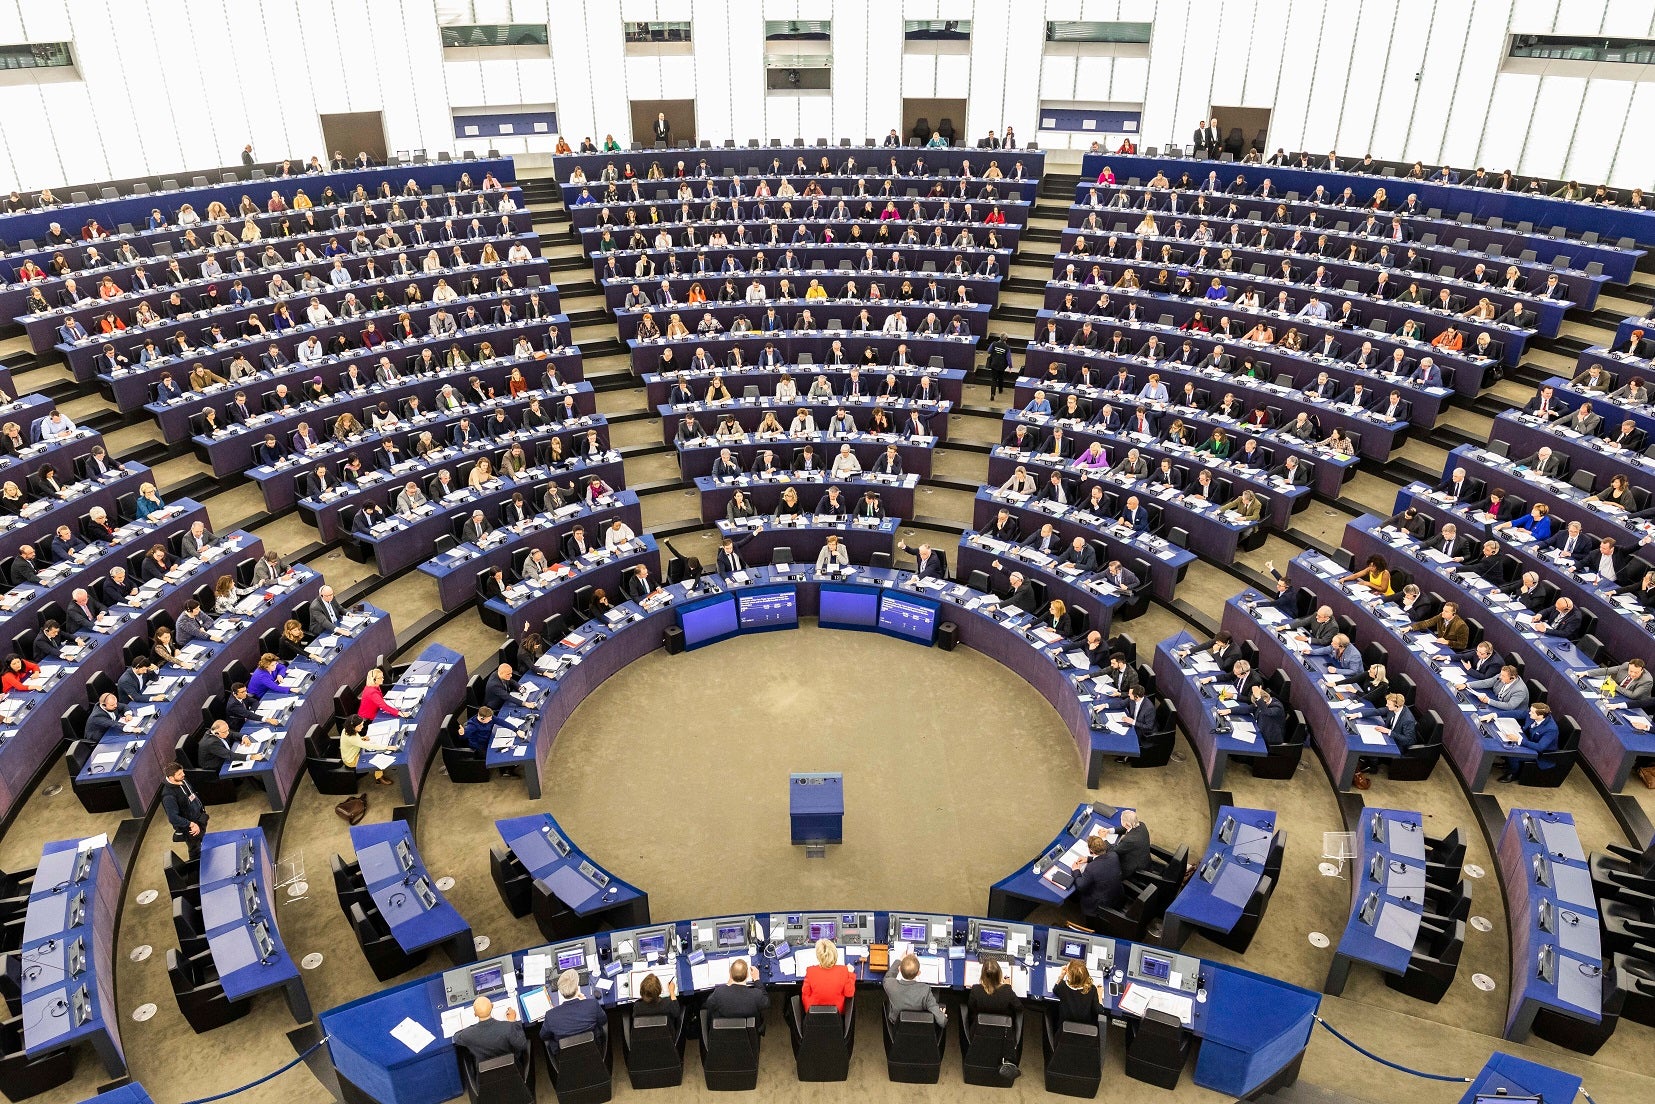 EU: Press Vietnam on Human Rights Reforms